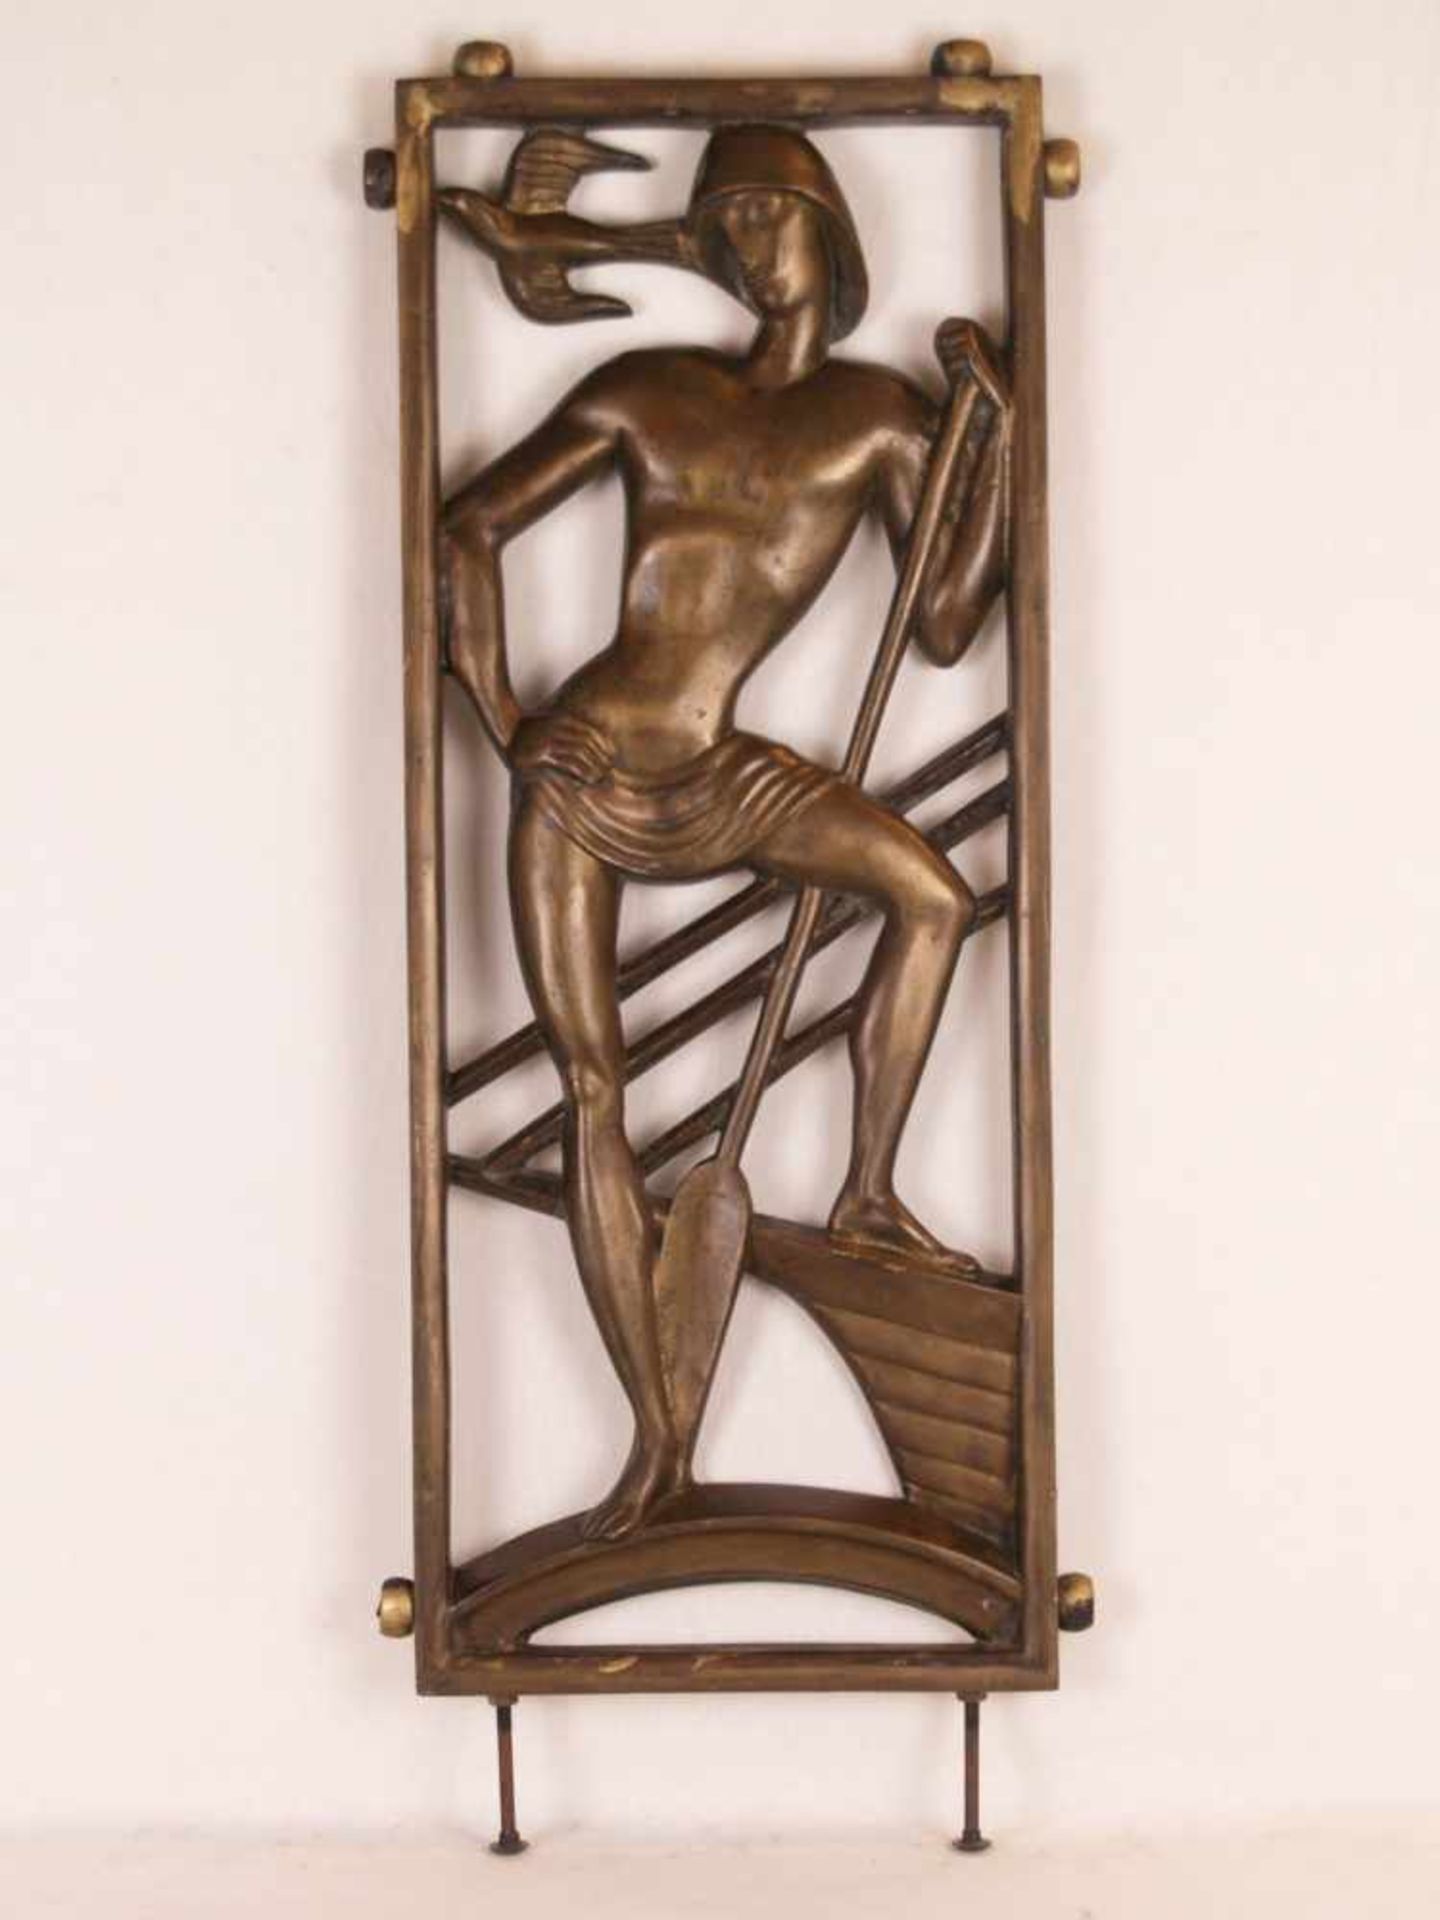 Wandrelief - Eisenguss, Schausete bronziert, durchbrochen gearbeitet, im rechteckigen Rahmen